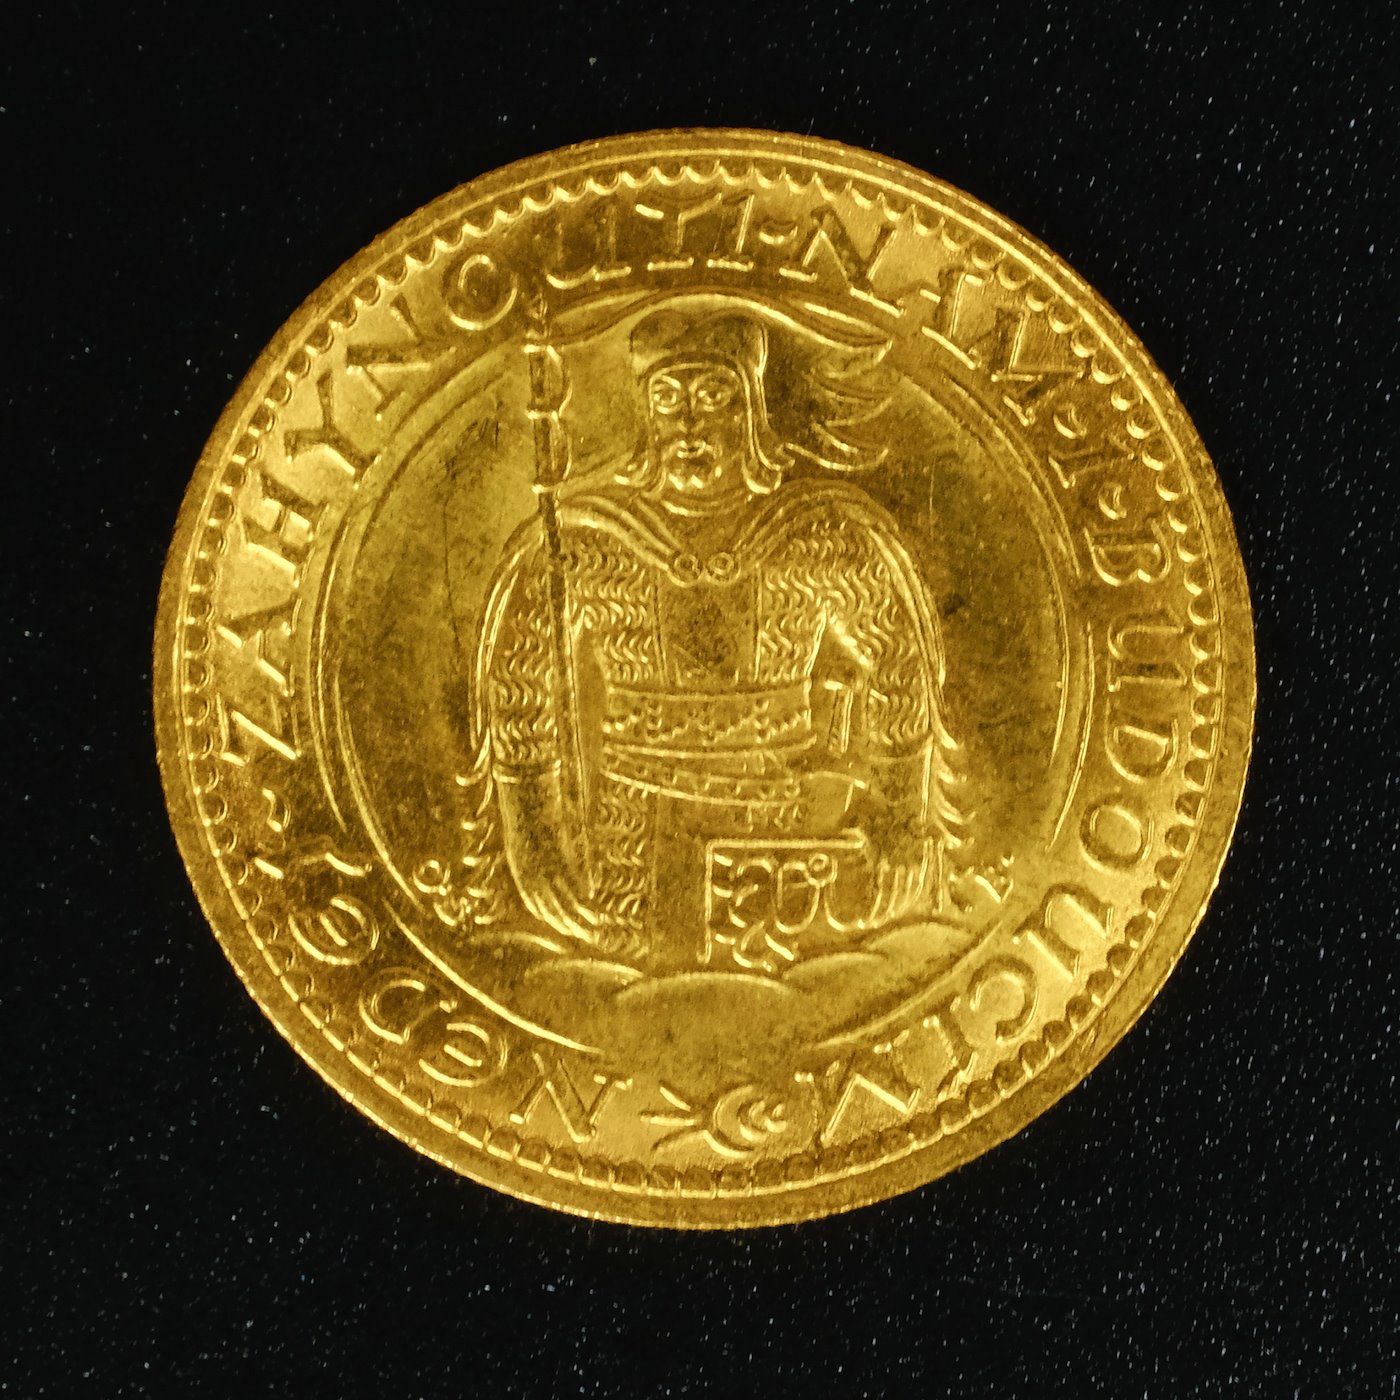 Mince - Československá republika Svatováclavský dukát 1928 RR! Zlato 986/1000, hrubá hmotnost mince 3,49g